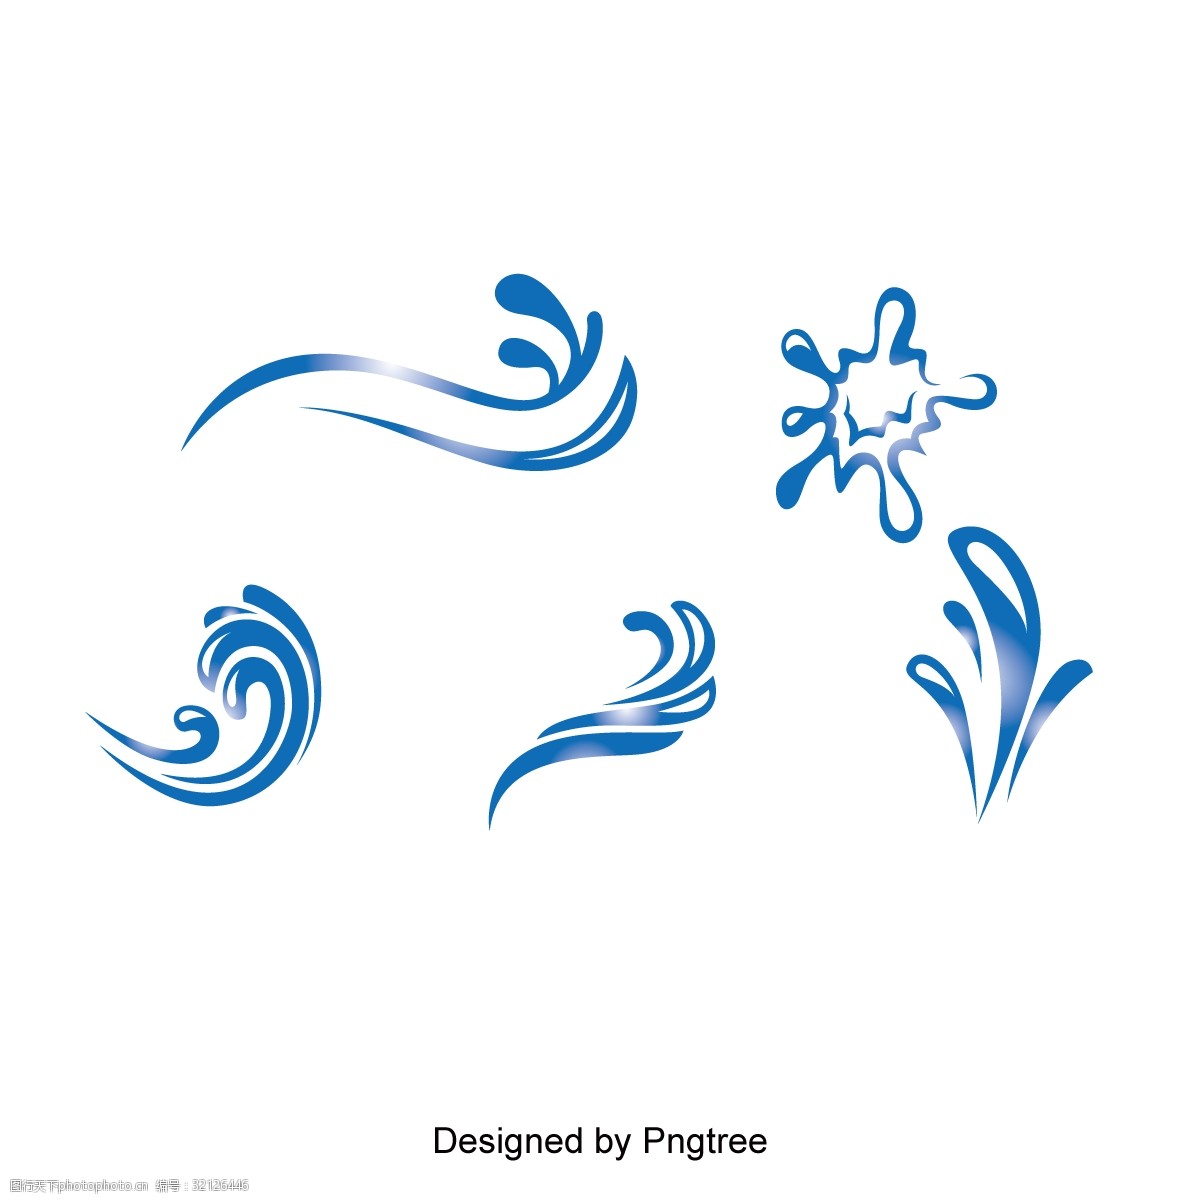 关键词:简单水滴设计元素 卡通简单风格水液体水滴想法图形图案设计